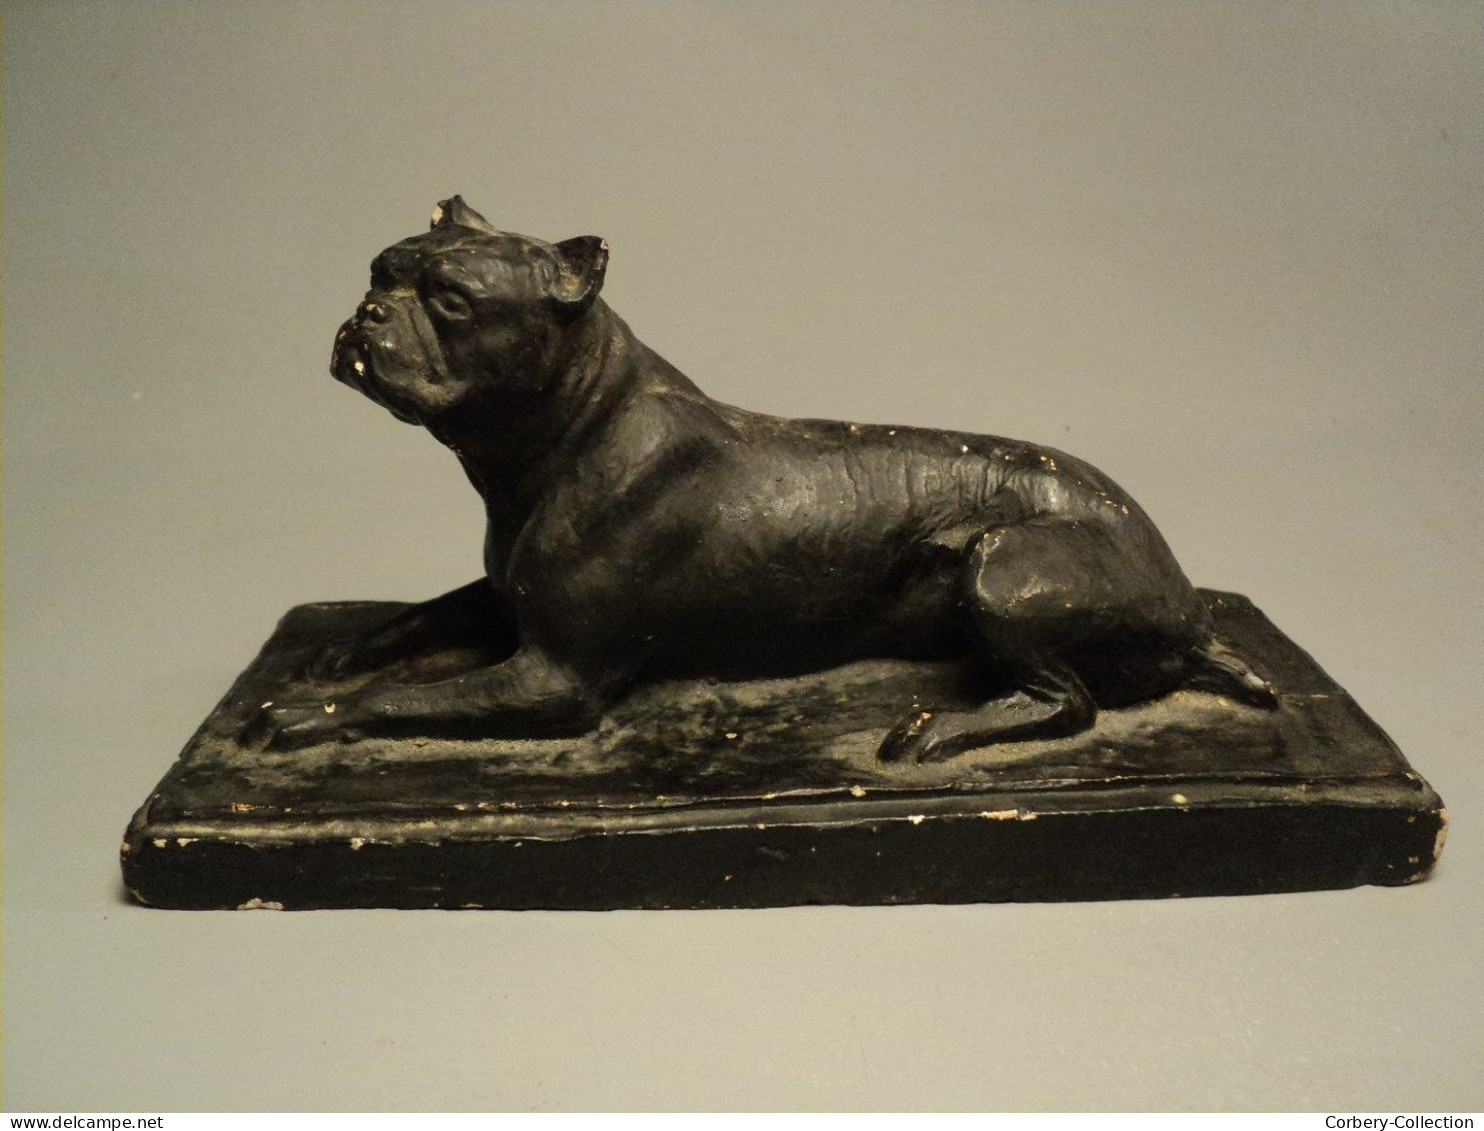 Ancienne Sculpture Chien Boxer Bouledogue Début XXème Sculpteur Animalier Charles Chivot (1866-1941) - Plaster